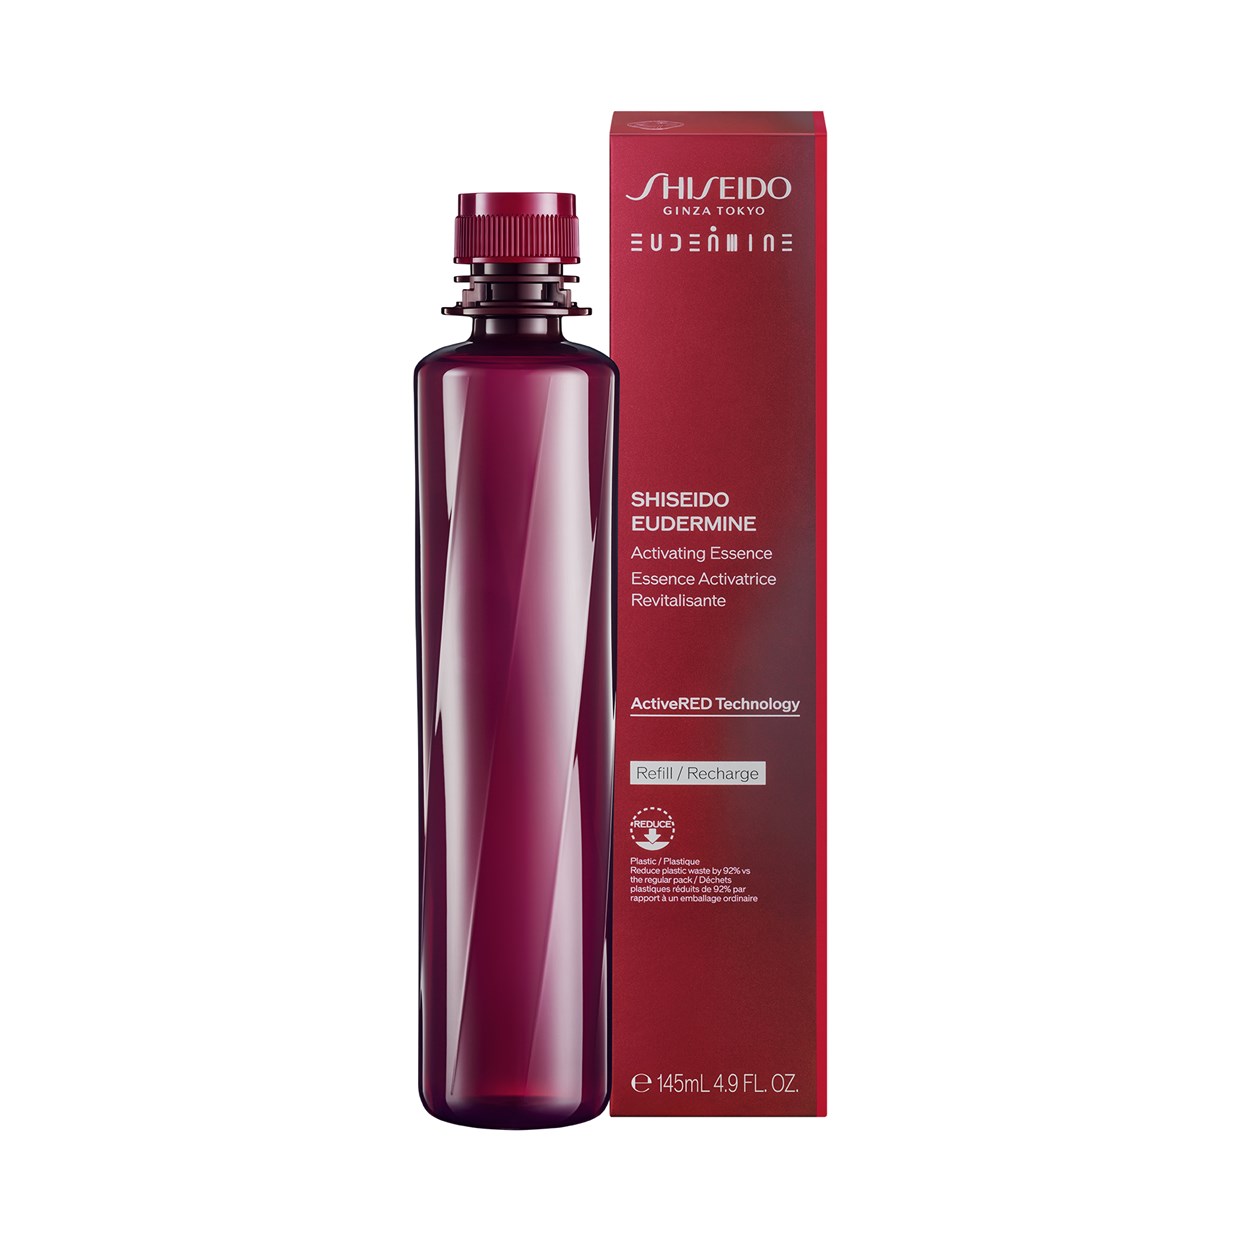 Shiseido Náhradní náplň do pleťového tonika Eudermine (Activating Essence Refill) 145 ml